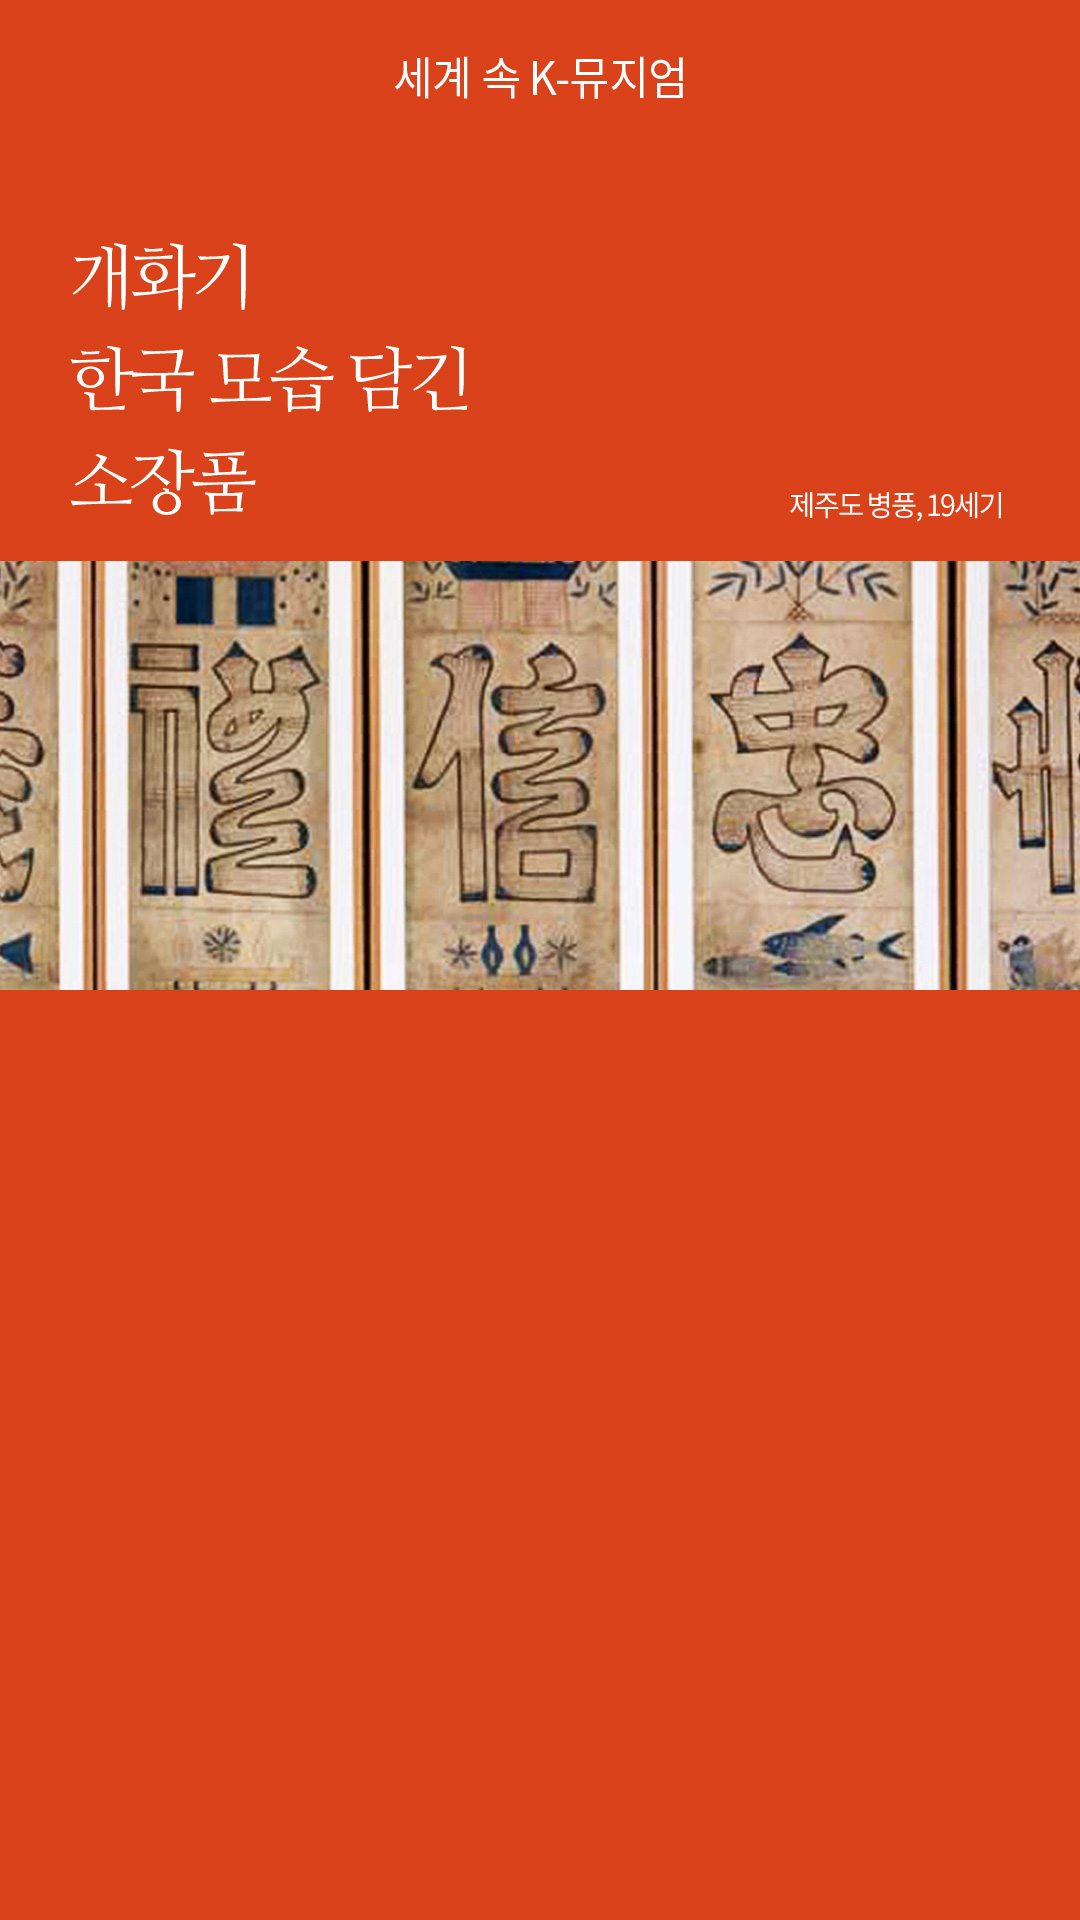 개화기 한국 모습 담긴 소장품 / 제주도 병풍, 19세기